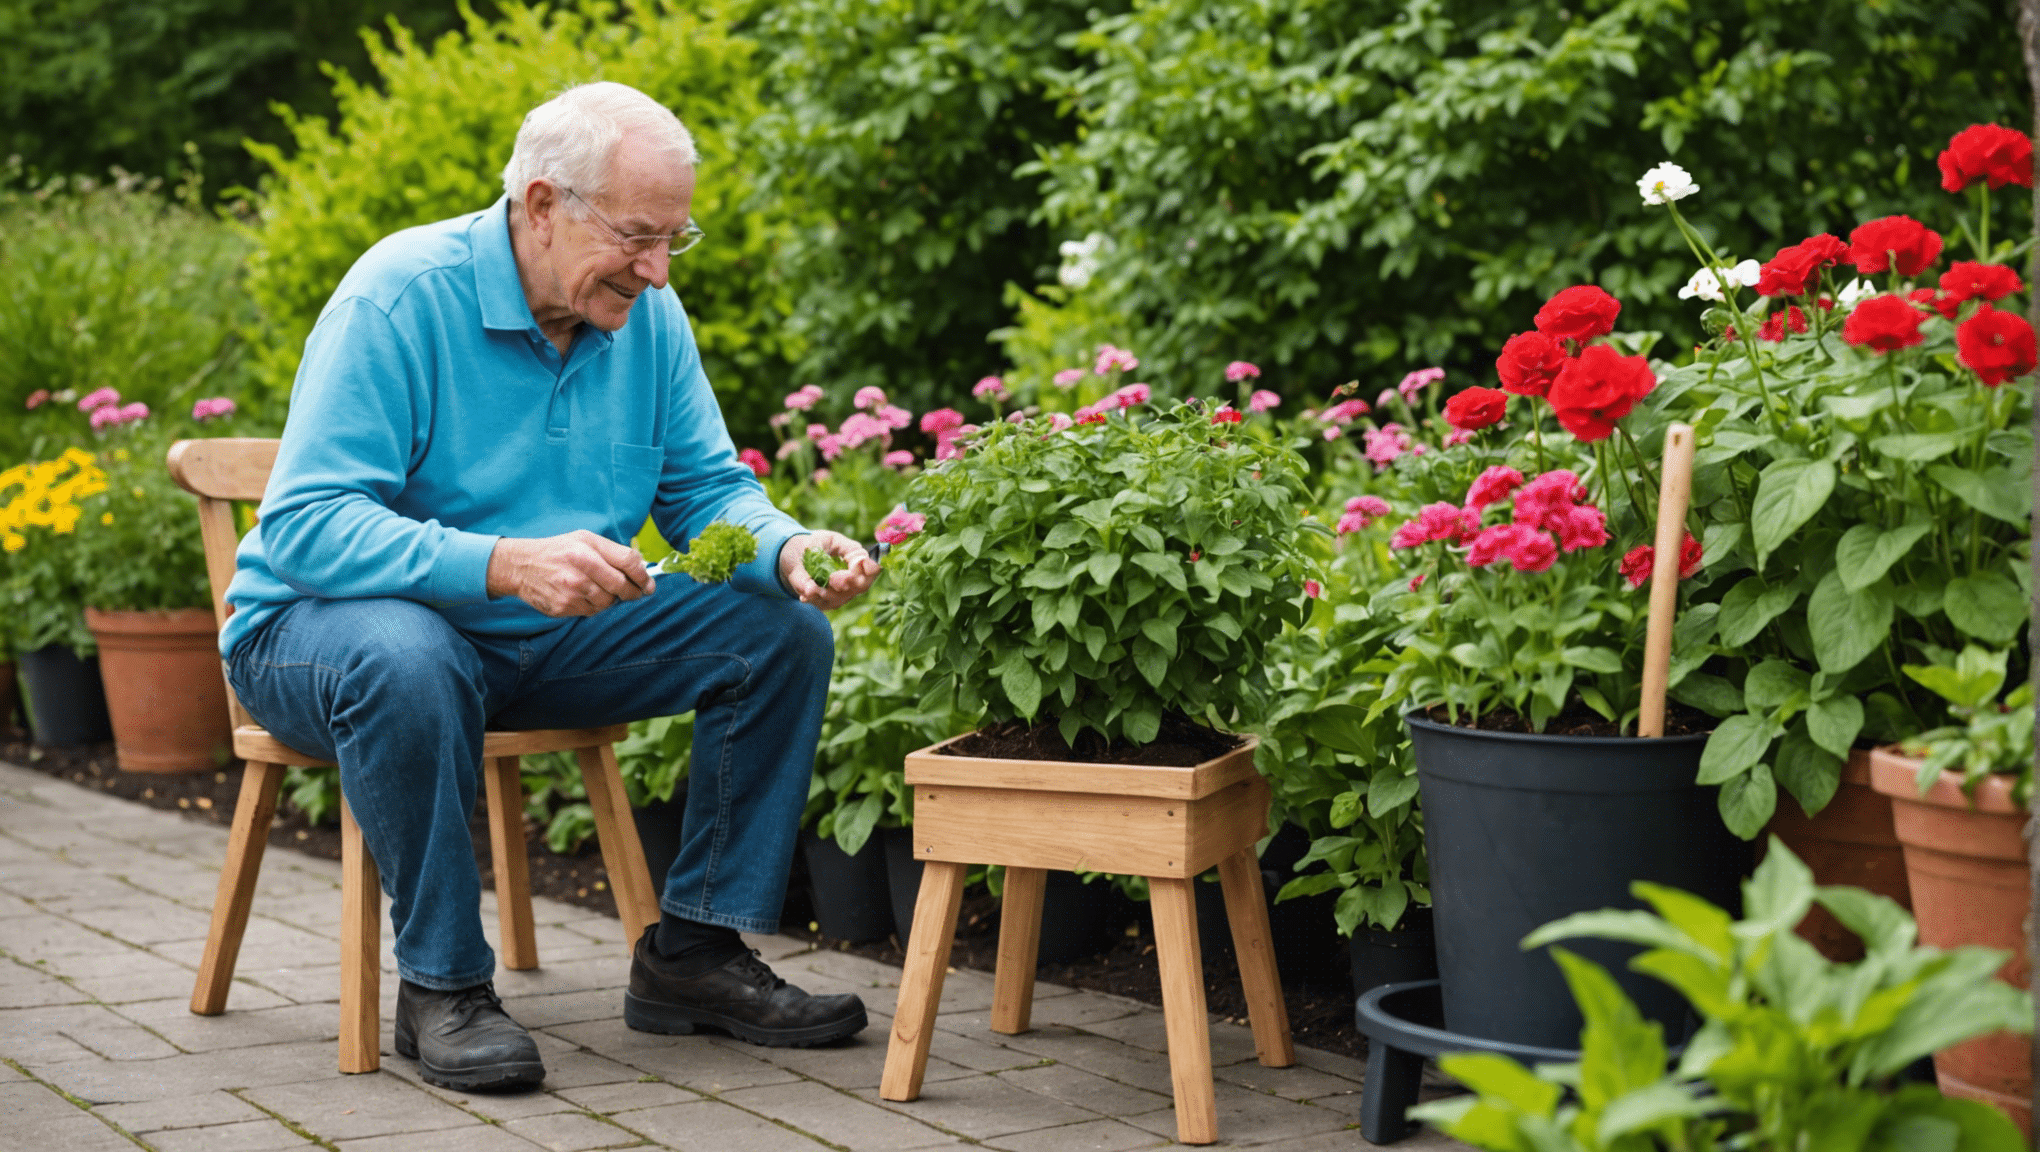 objavte výhody záhradných stoličiek pre seniorov, vrátane lepšieho pohodlia, dostupnosti a jednoduchosti použitia. zistite, ako môžu záhradnícke stoličky urobiť záhradníctvo príjemnejšou a zvládnuteľnou činnosťou pre starších ľudí.